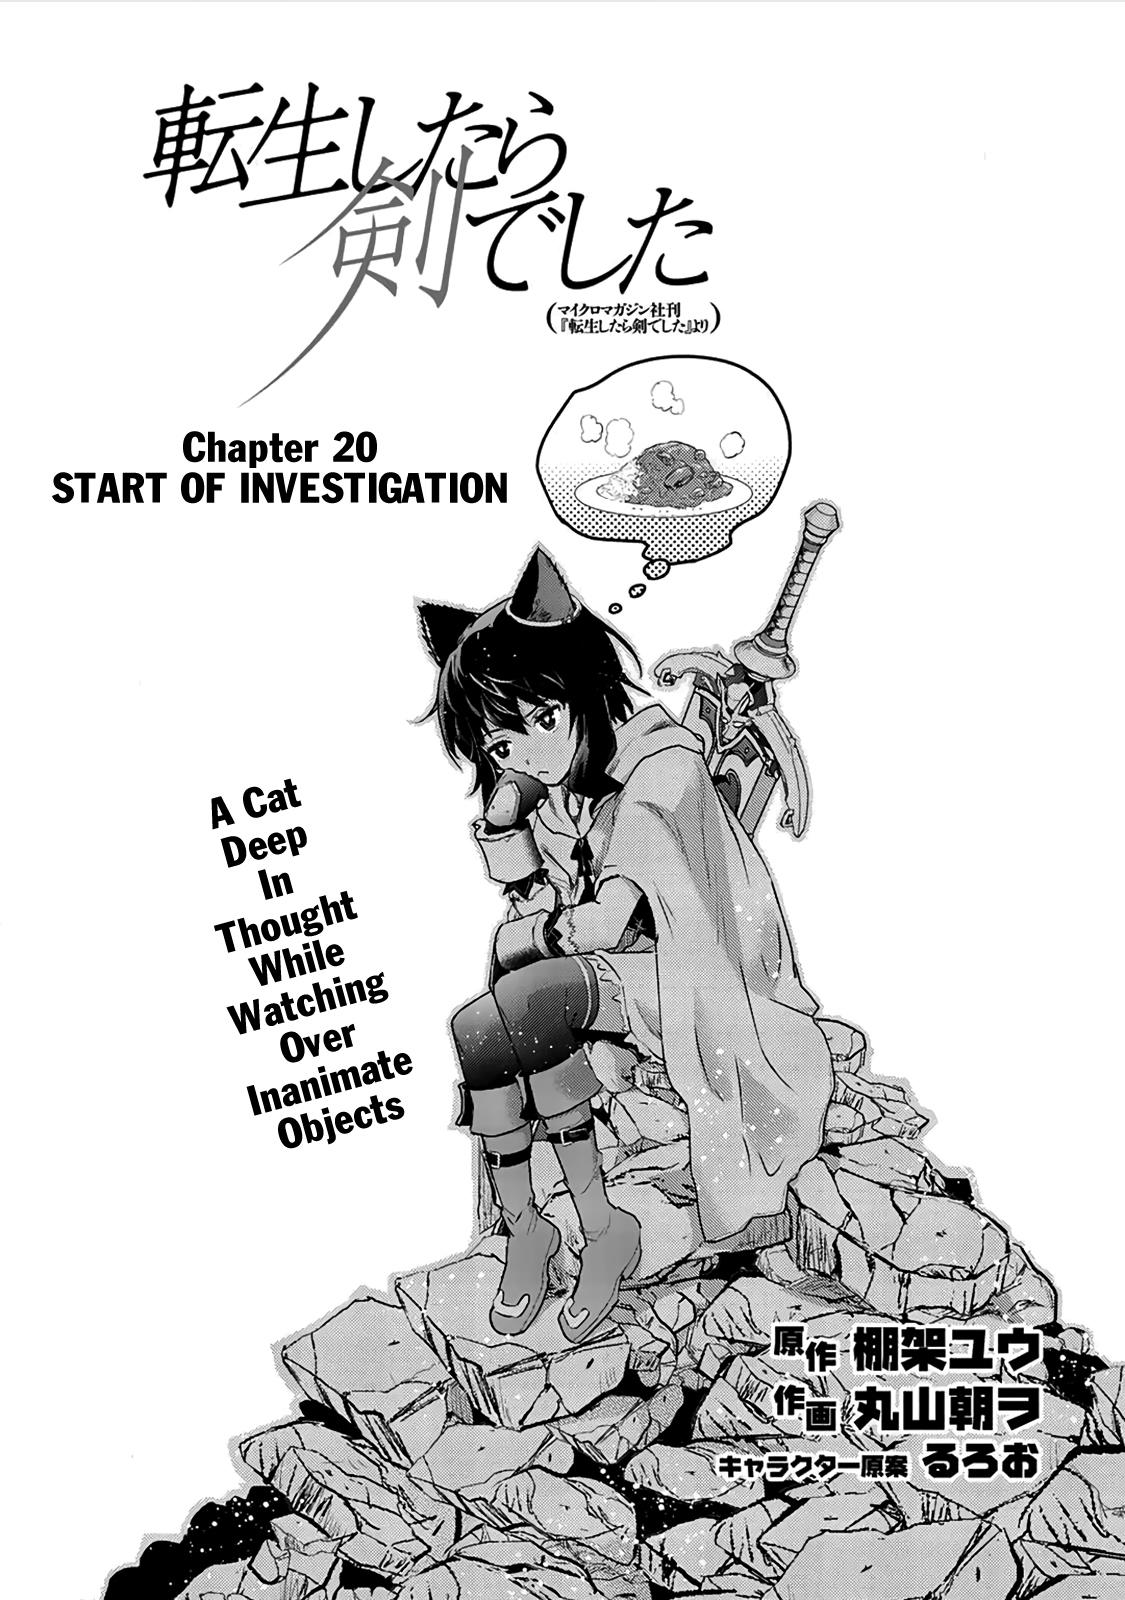 Read Tensei Shitara Ken Deshita Chapter 51 - Manganelo